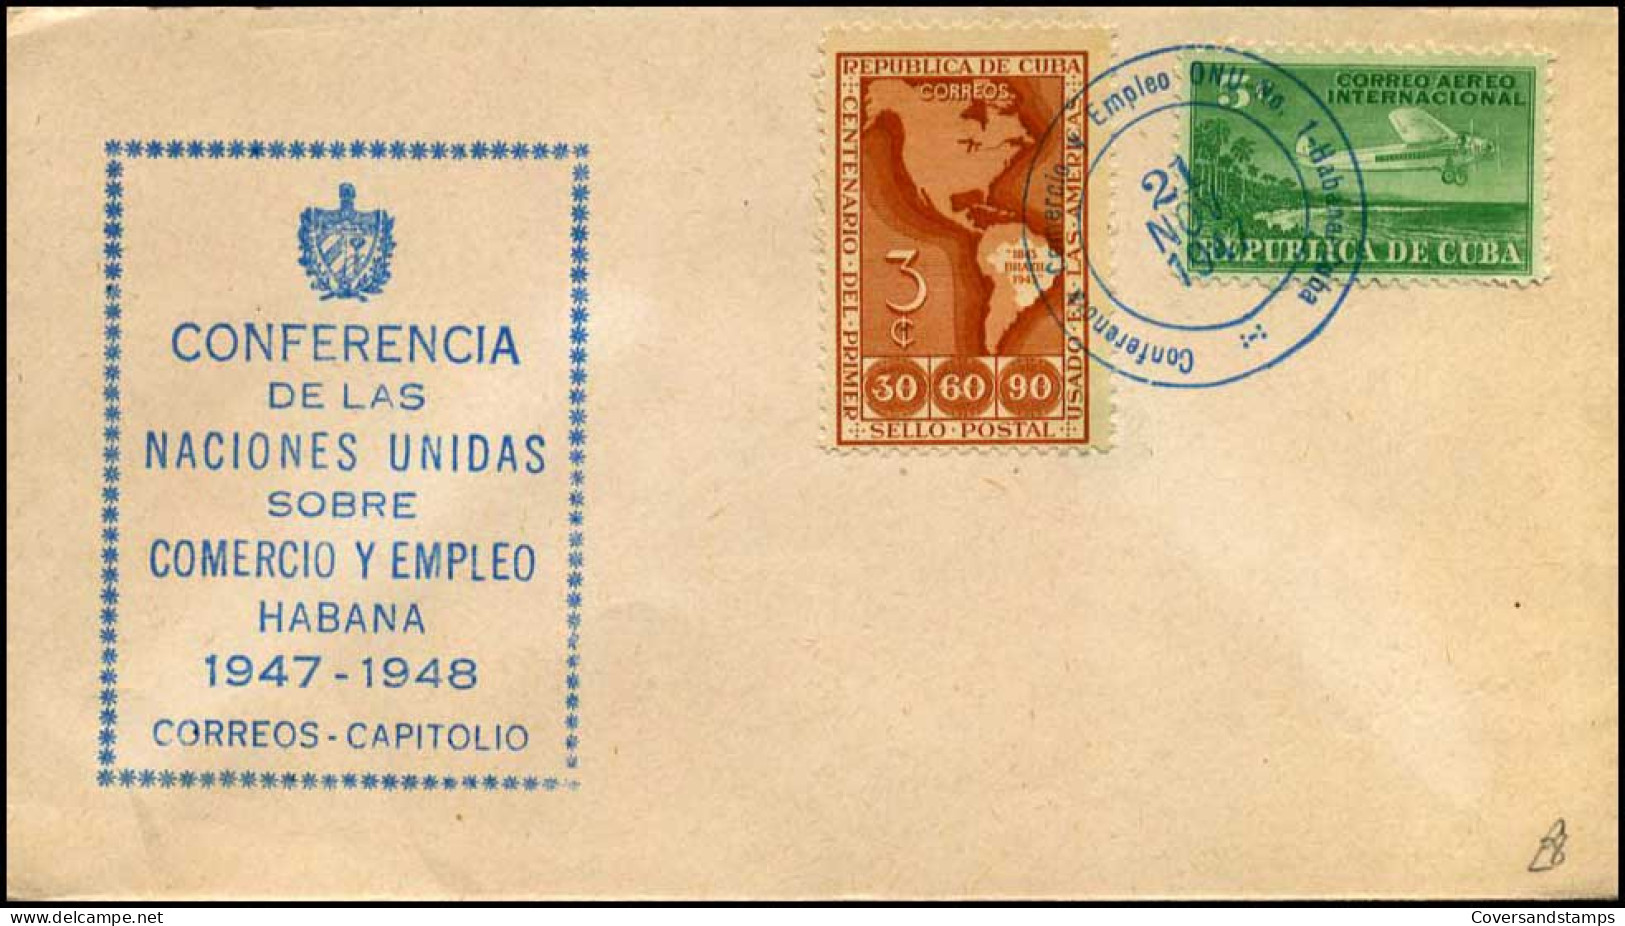 Cuba - FDC - Conferencia De Las Naciones Unidas Sobre Comercio Y Empleo Habana 1947-1948 - Aviones